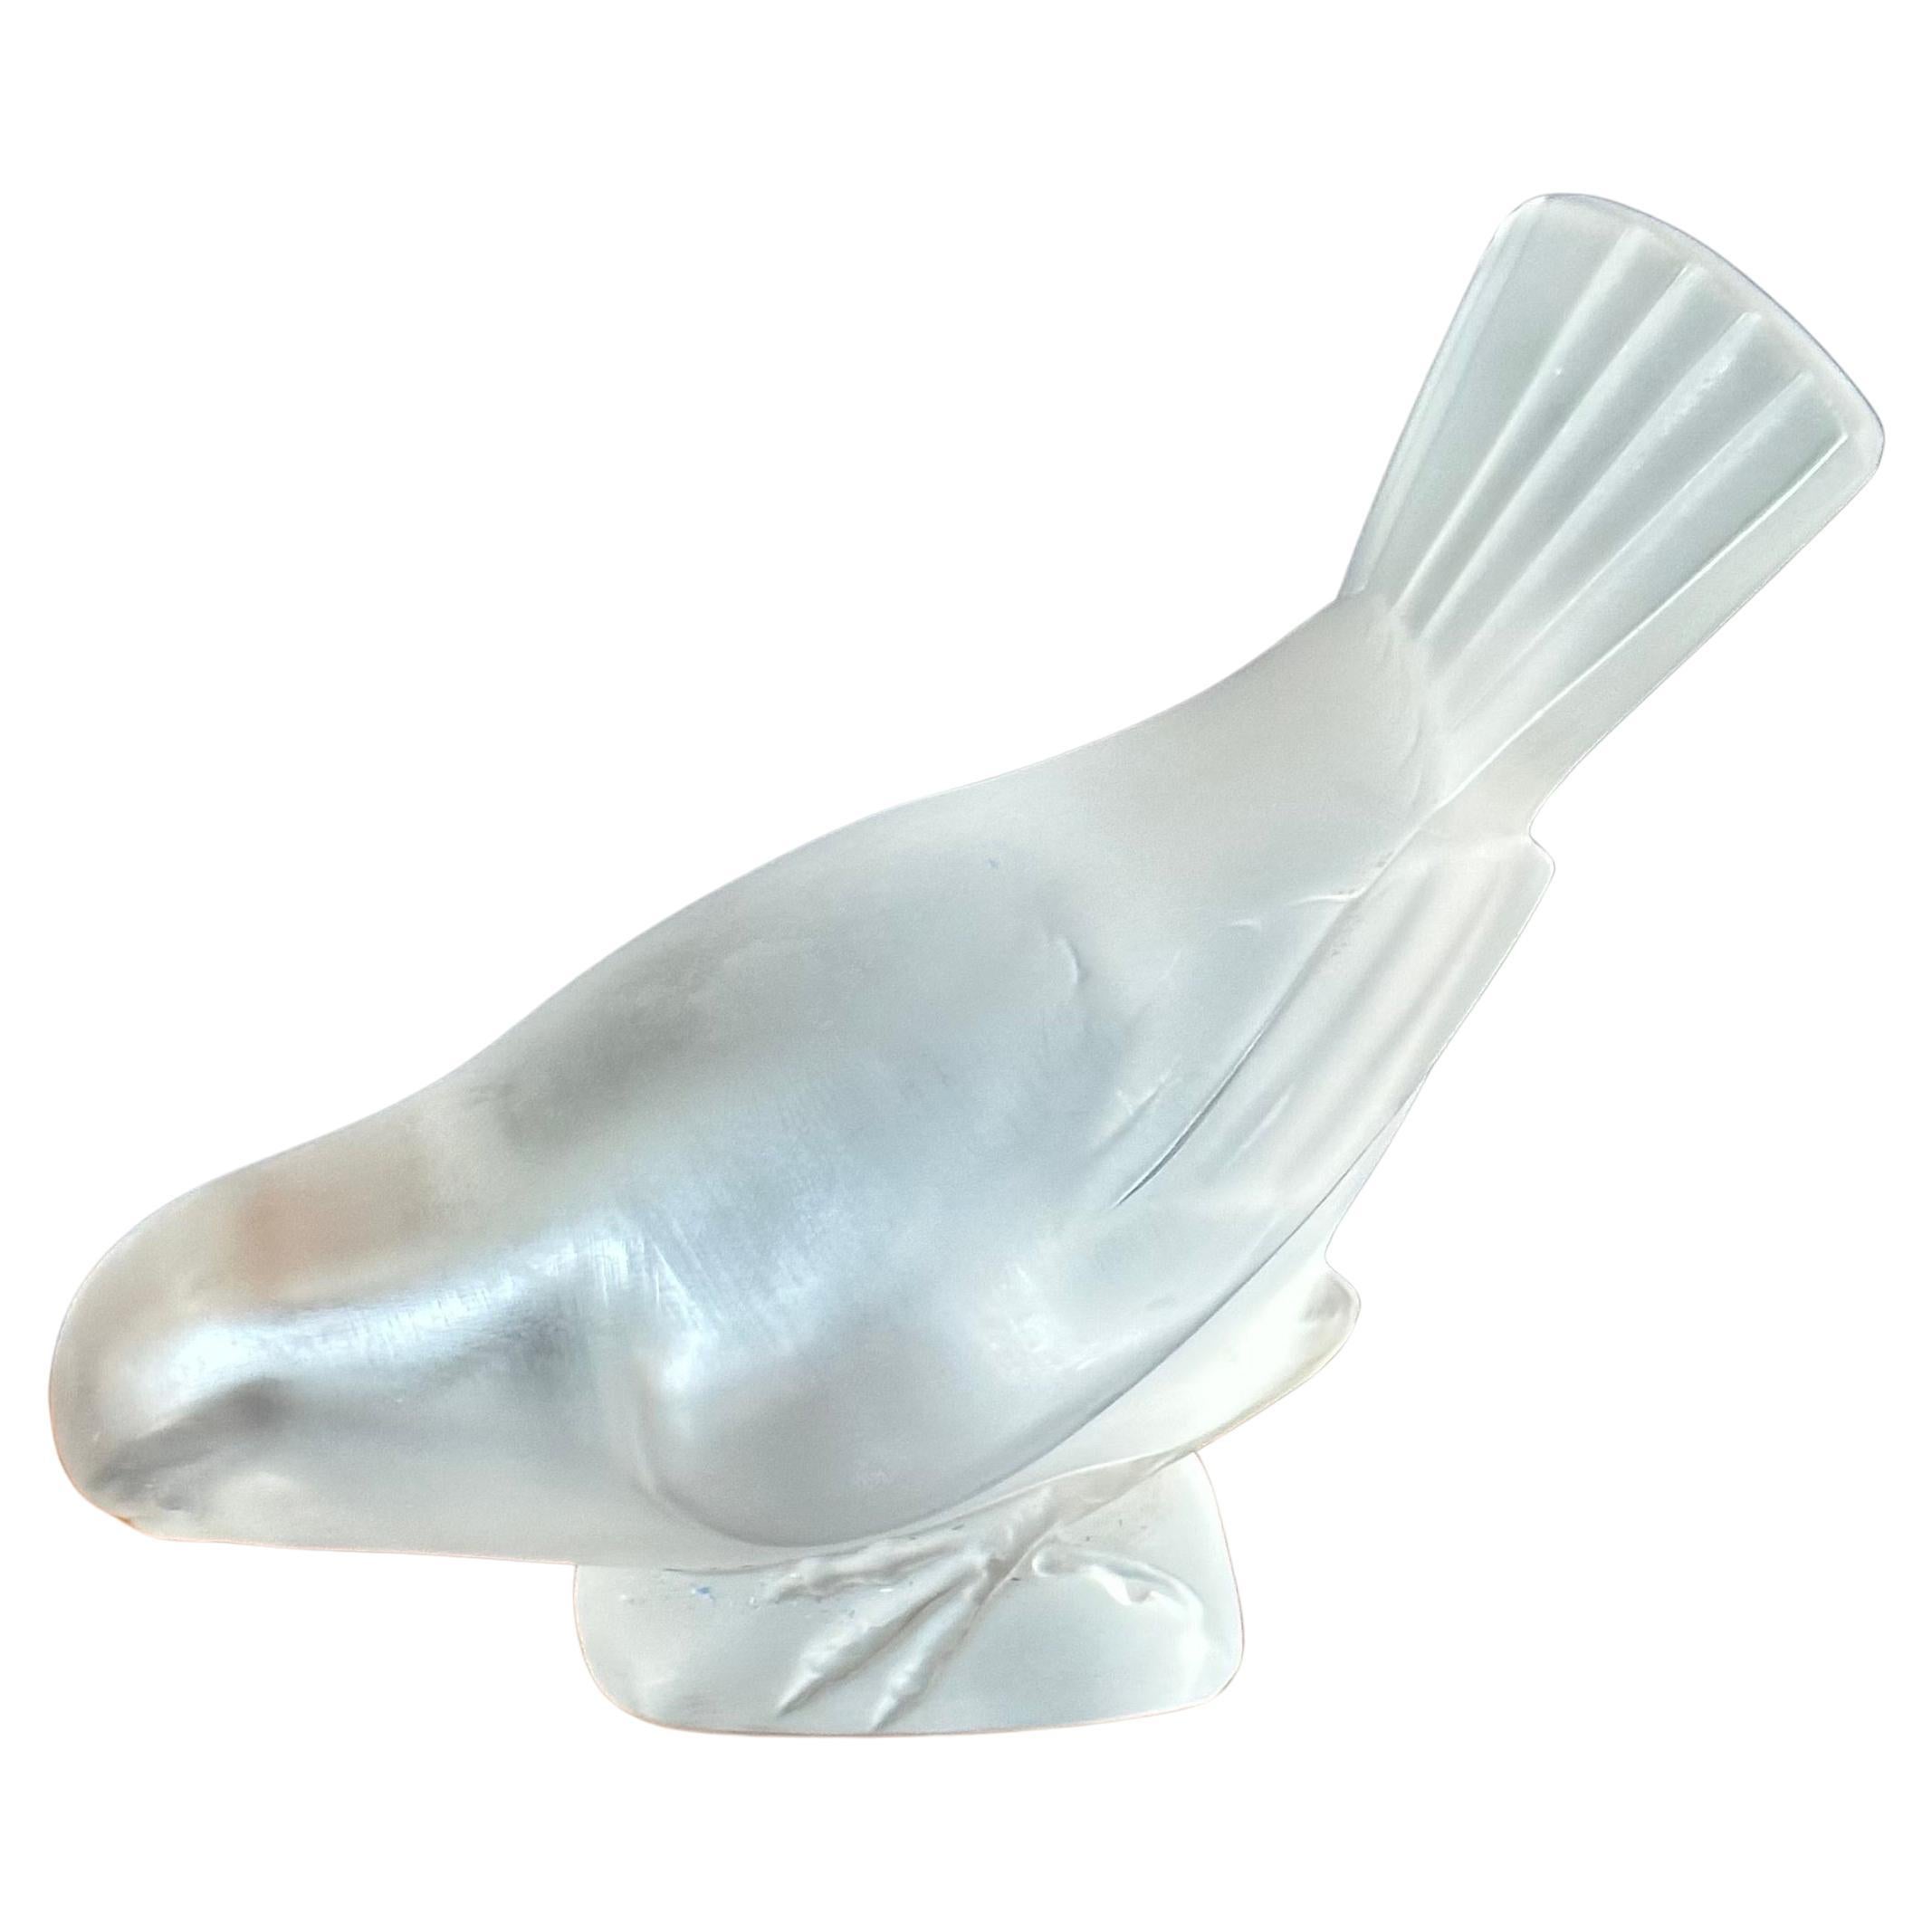 Magnifique sculpture de moineau/oiseau en cristal givré de Lalique (France), vers les années 1980. L'oiseau est en très bon état, sans éclats ni fissures, et mesure 5 